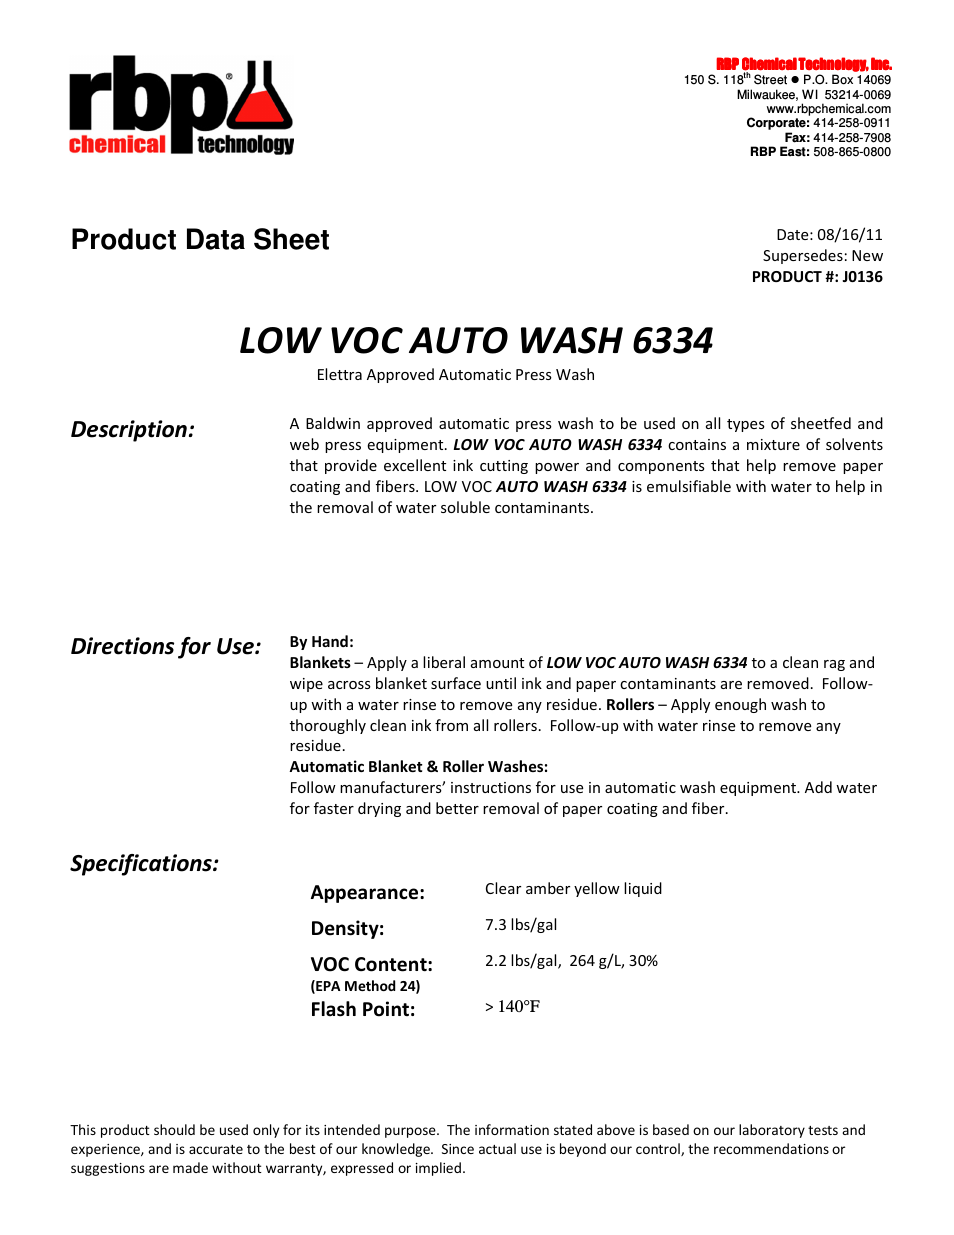 J0136 LOW VOC AUTO WASH 6334